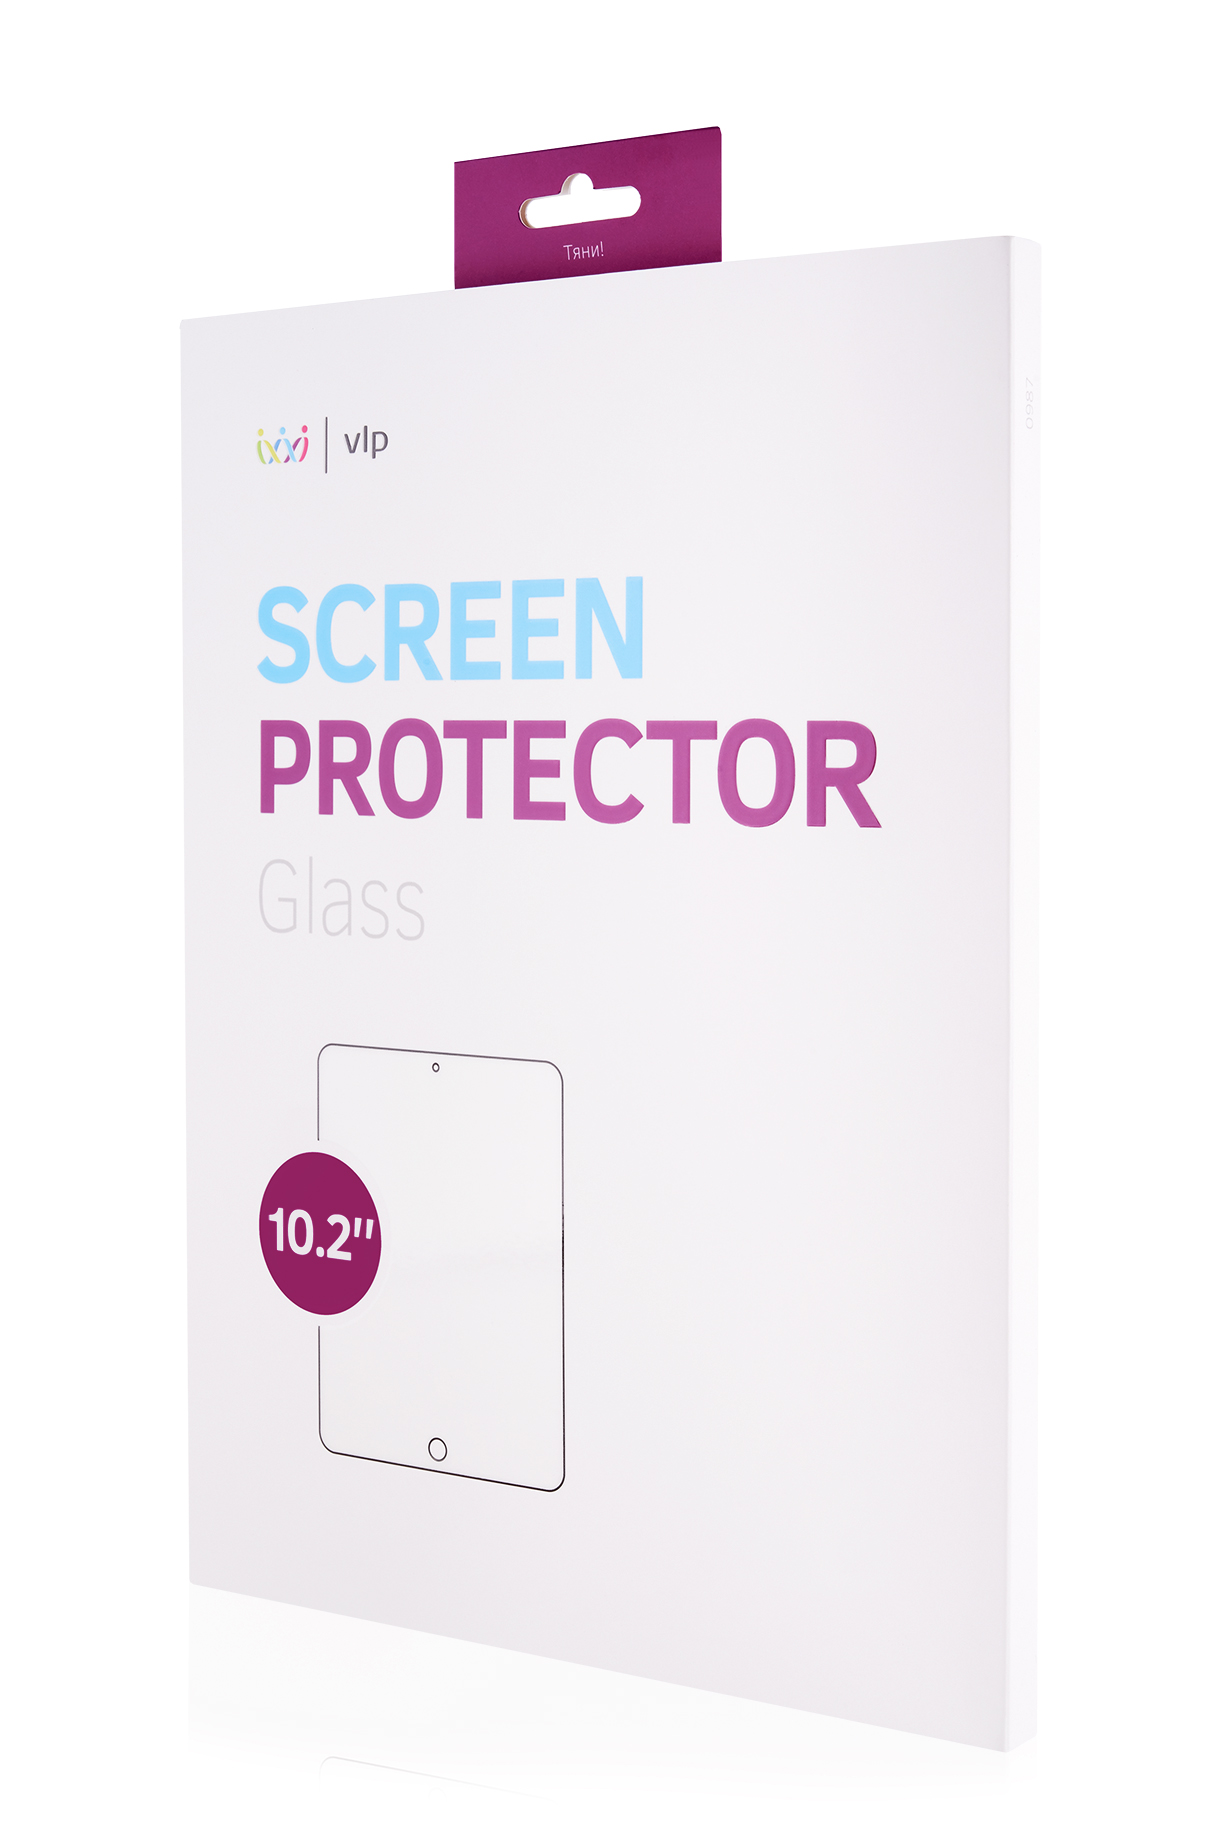 Стекло защитное VLP для iPad Pro 10.2, олеофобное защитное стекло vlp стекло защитное vlp для ipad 9 7 олеофобное